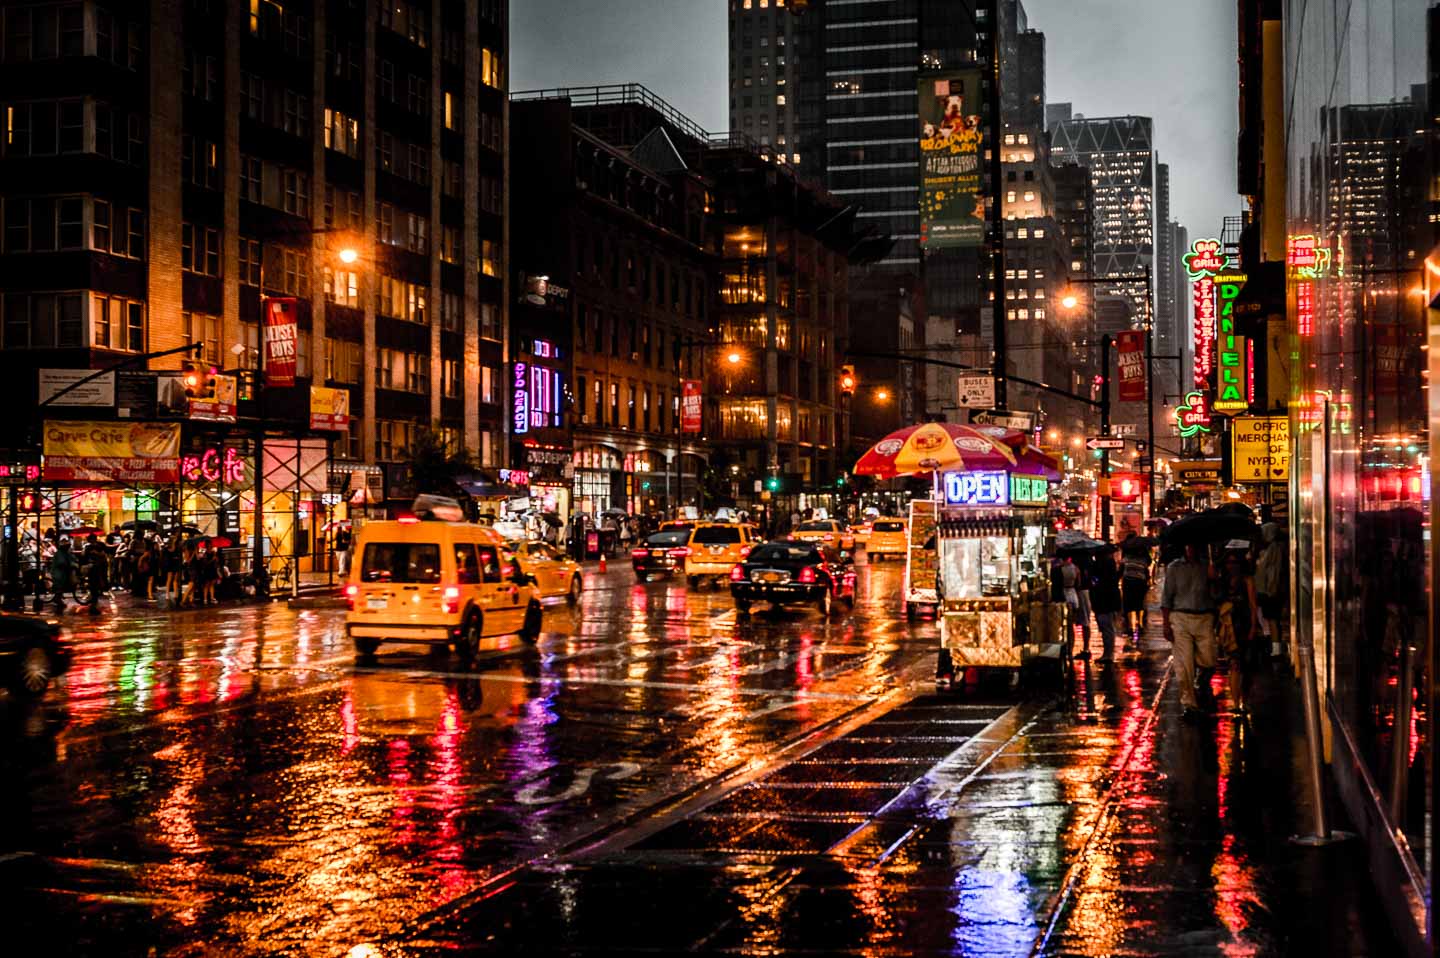 Rainy Night In New York City Ralf Kayser Photographie